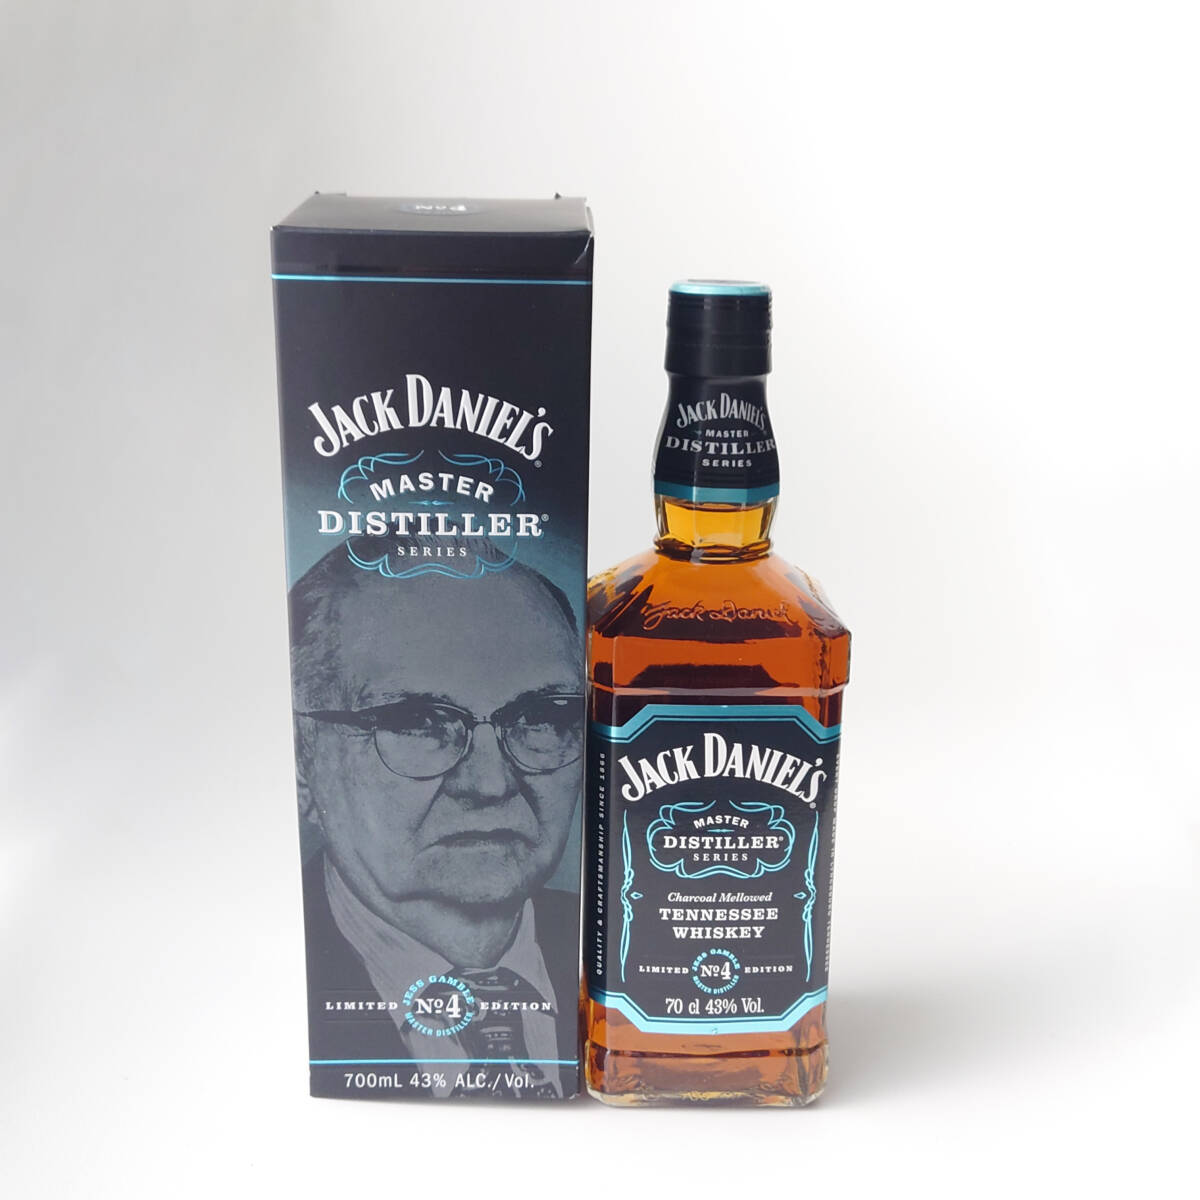 Jack Daniel's Master Distiller Series No.4 ジャックダニエル マスターディスティラーシリーズ 700ml